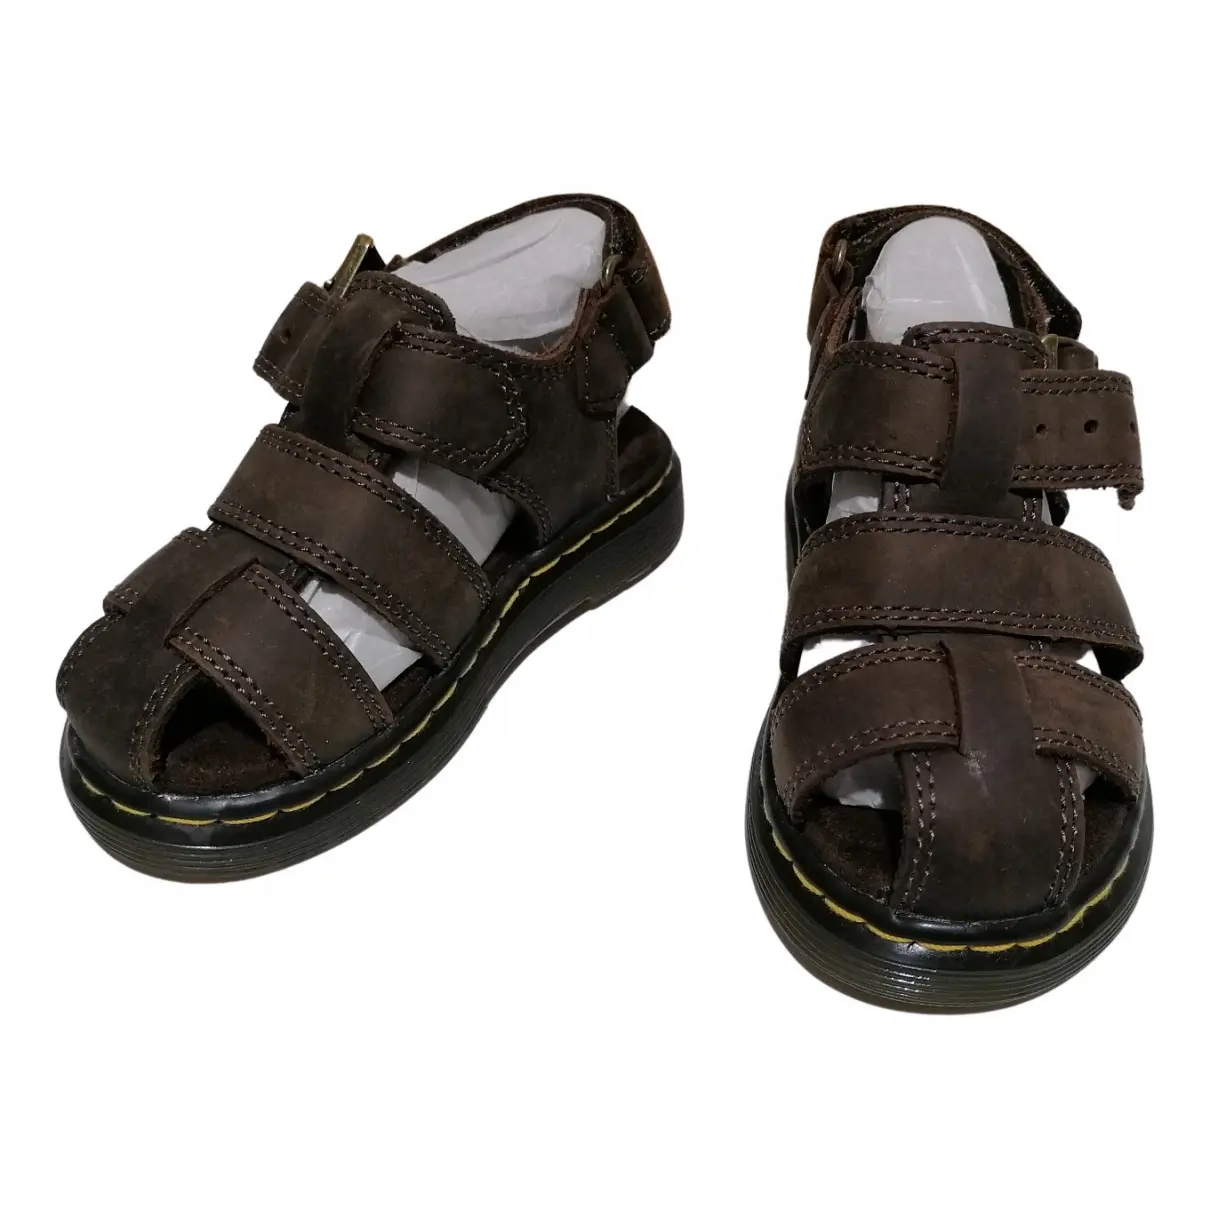 Leather sandals Dr. Martens